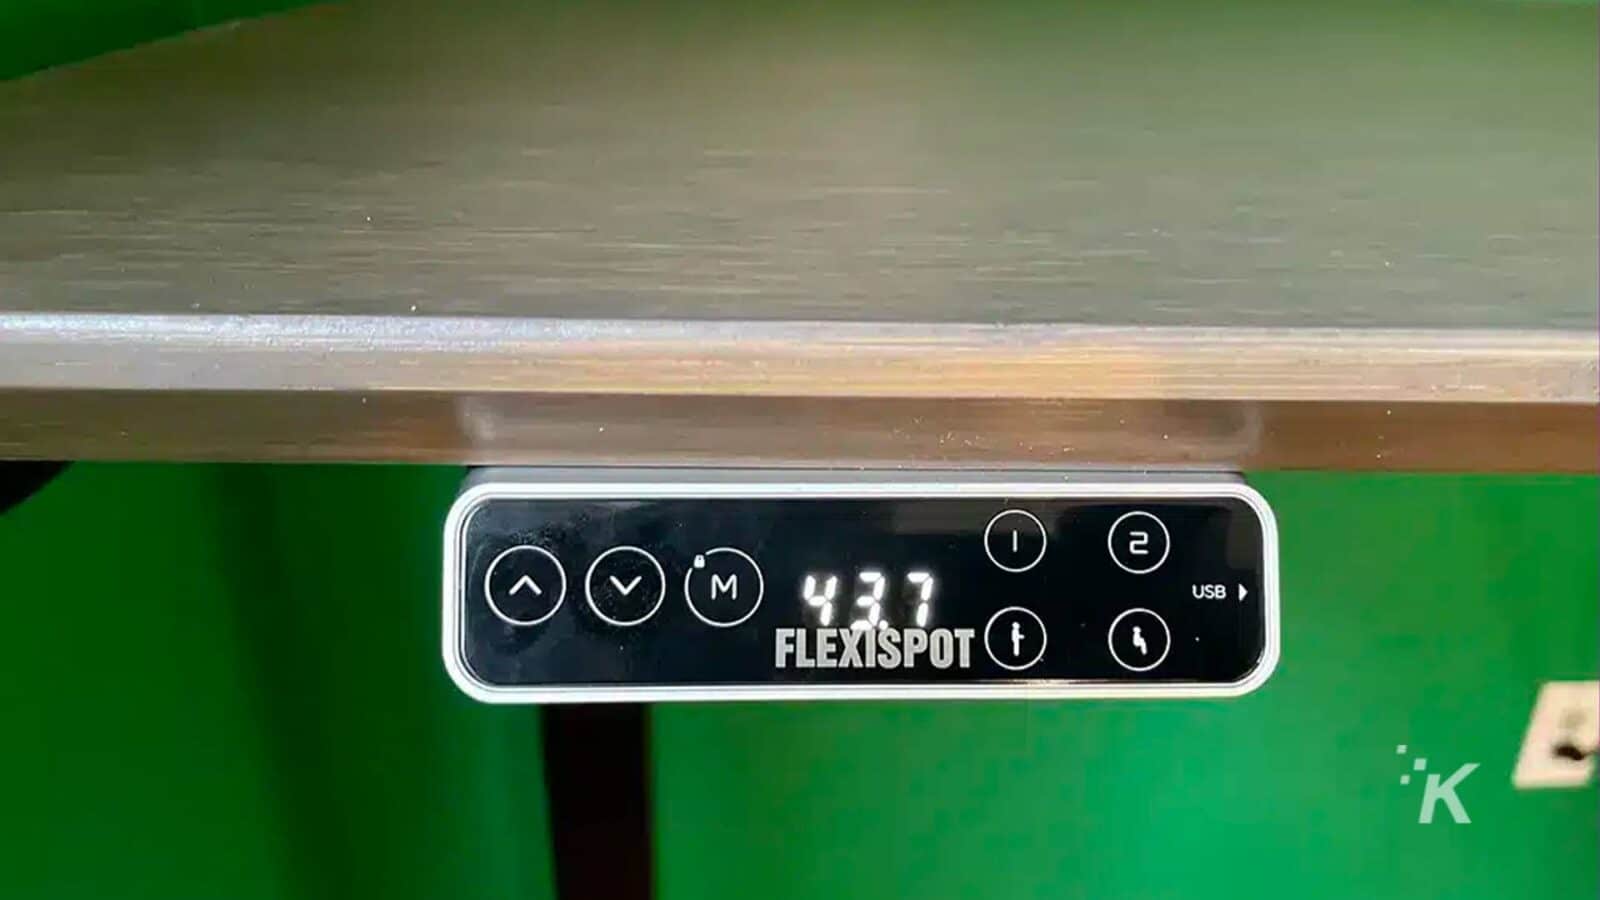 この画像は、FlexiSpot デバイスに接続されている USB ケーブルを示しています。全文: - VM) 437 2 1 USB または FLEXISPOT K